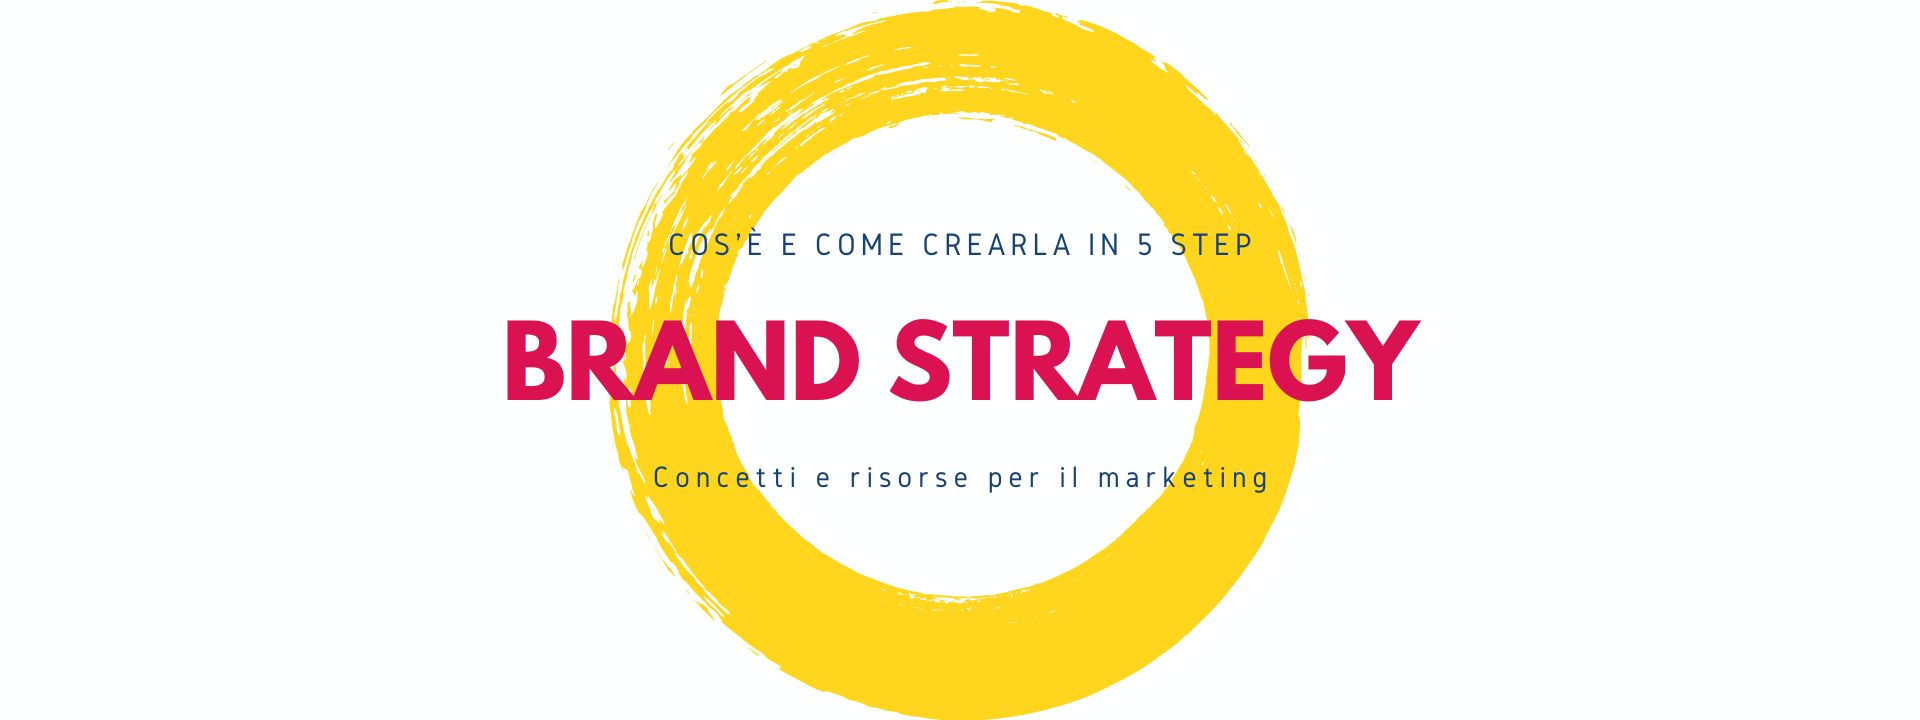 Come creare una brand strategy